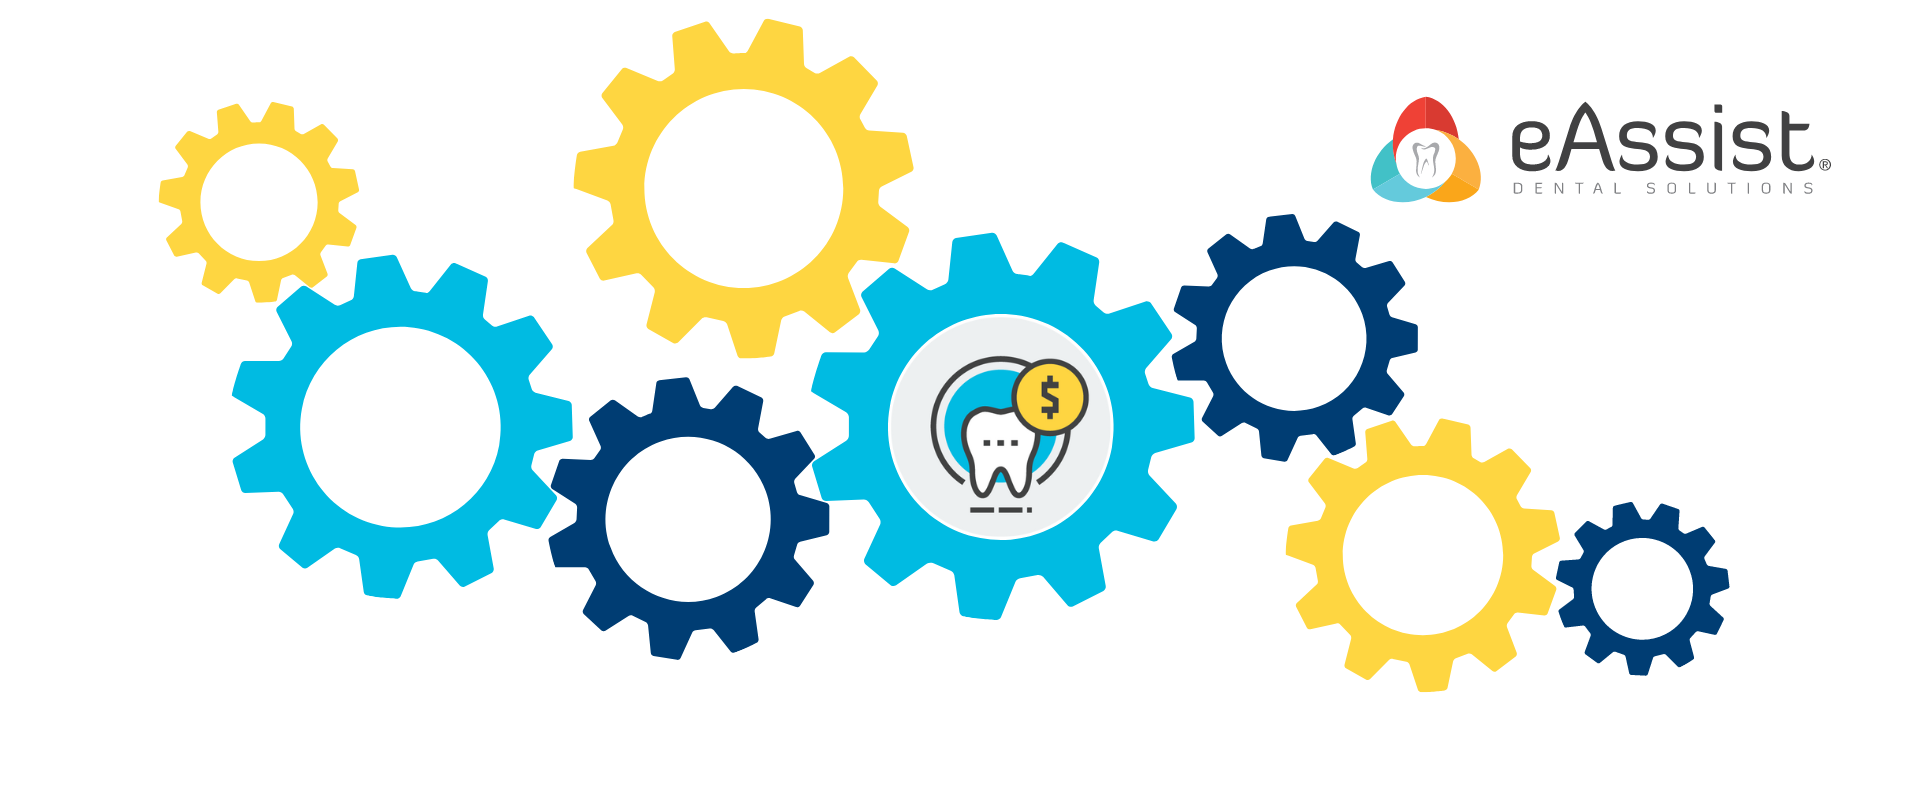 Dental billing eAssist clinical tips